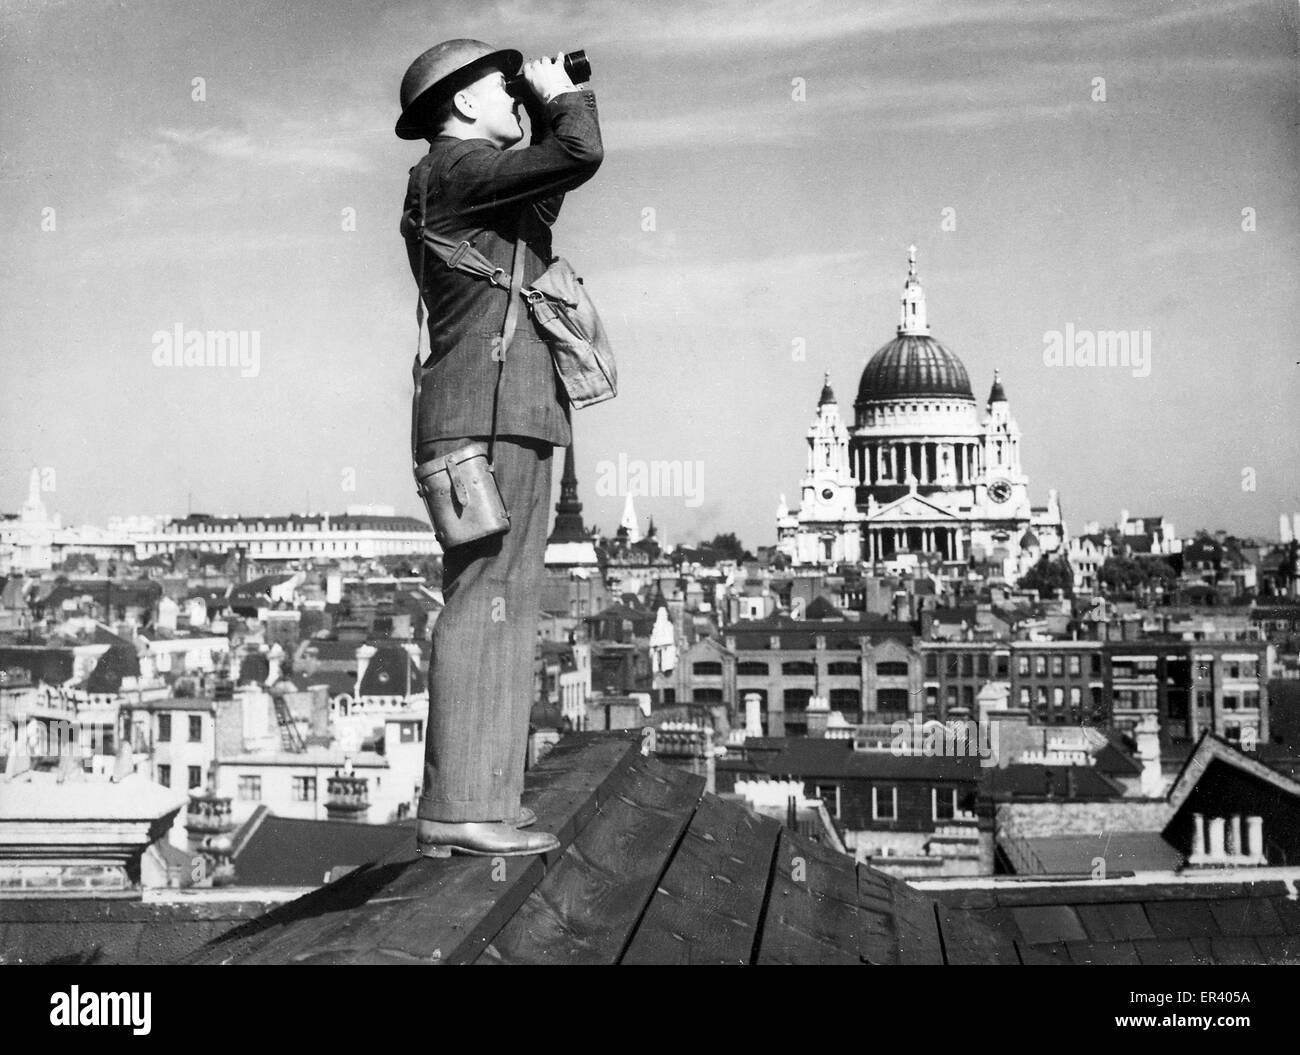 Un corps des observateurs Royal spotter analyse le ciel de Londres. Bataille d'Angleterre observateur aérien veillant sur Londres Banque D'Images